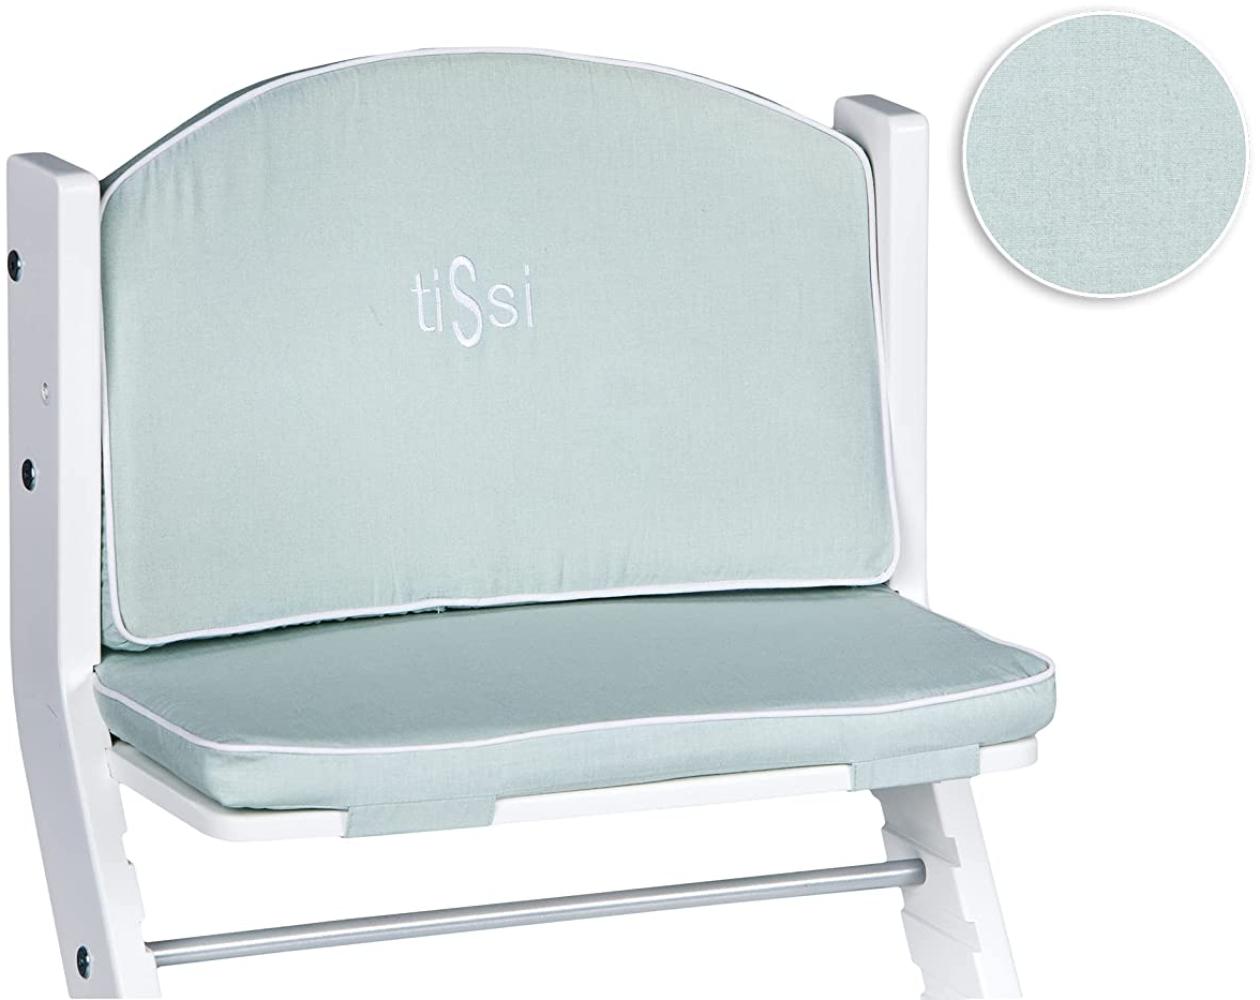 tiSsi® Sitzpolster / Sitzverkleinerer Hochstuhl Jade Mint Bild 1